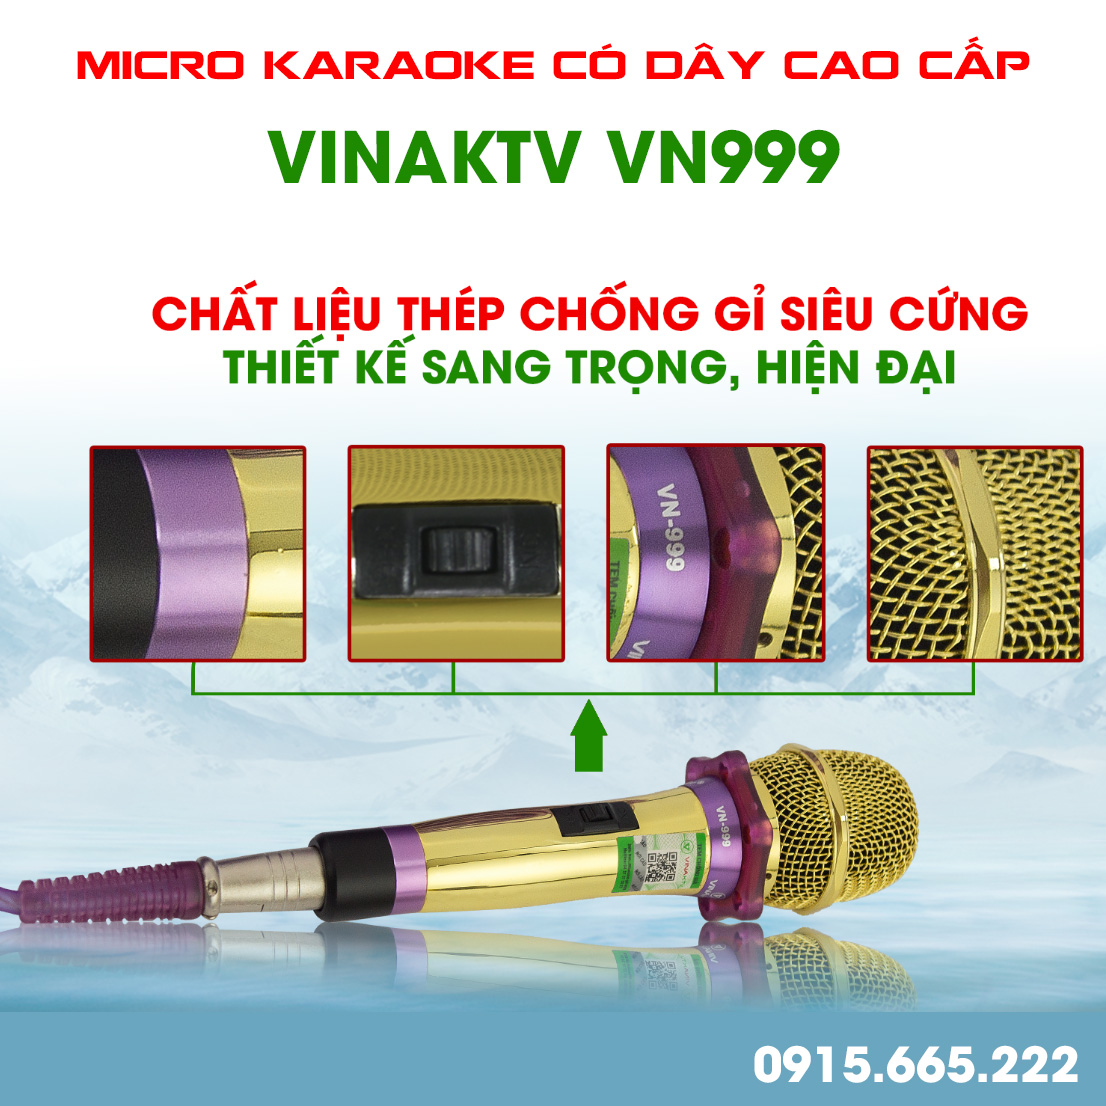 Micro karaoke có dây cao cấp VinaKTV VN999 - Hàng chính hãng